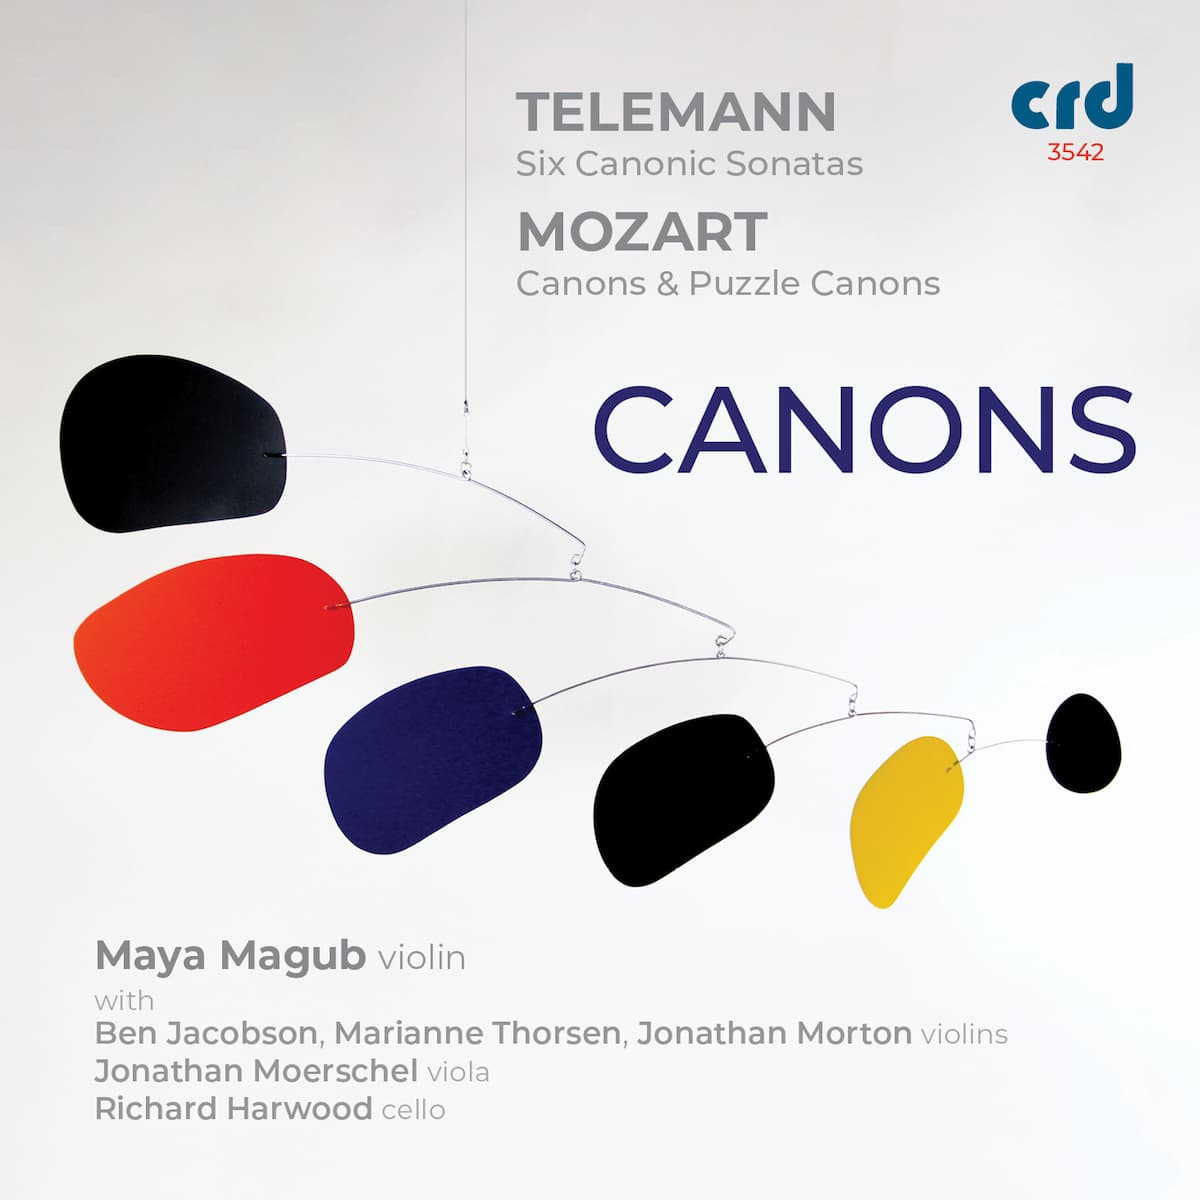 Album cover of violinist Maya Magub's Canons